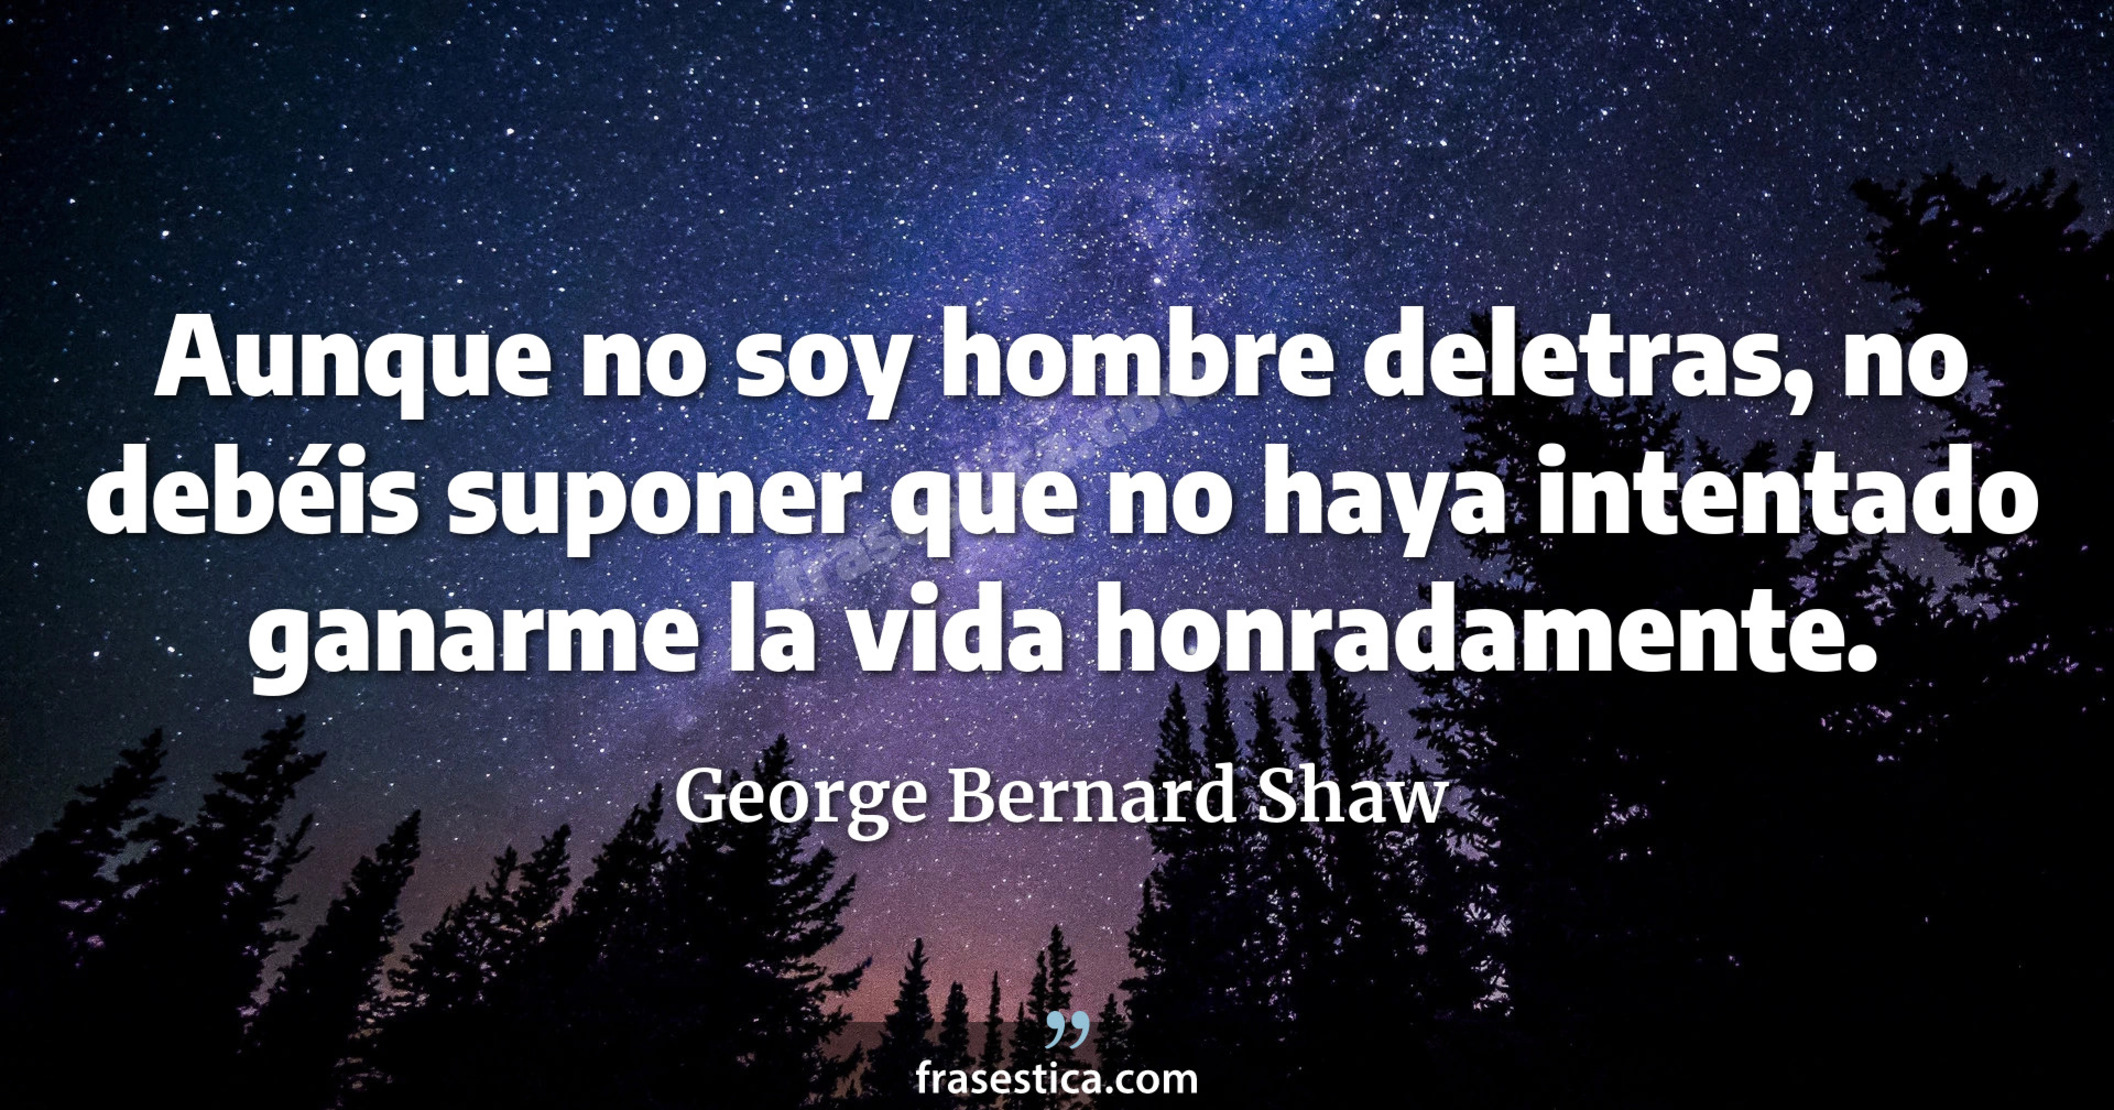 Aunque no soy hombre deletras, no debéis suponer que no haya intentado ganarme la vida honradamente. - George Bernard Shaw